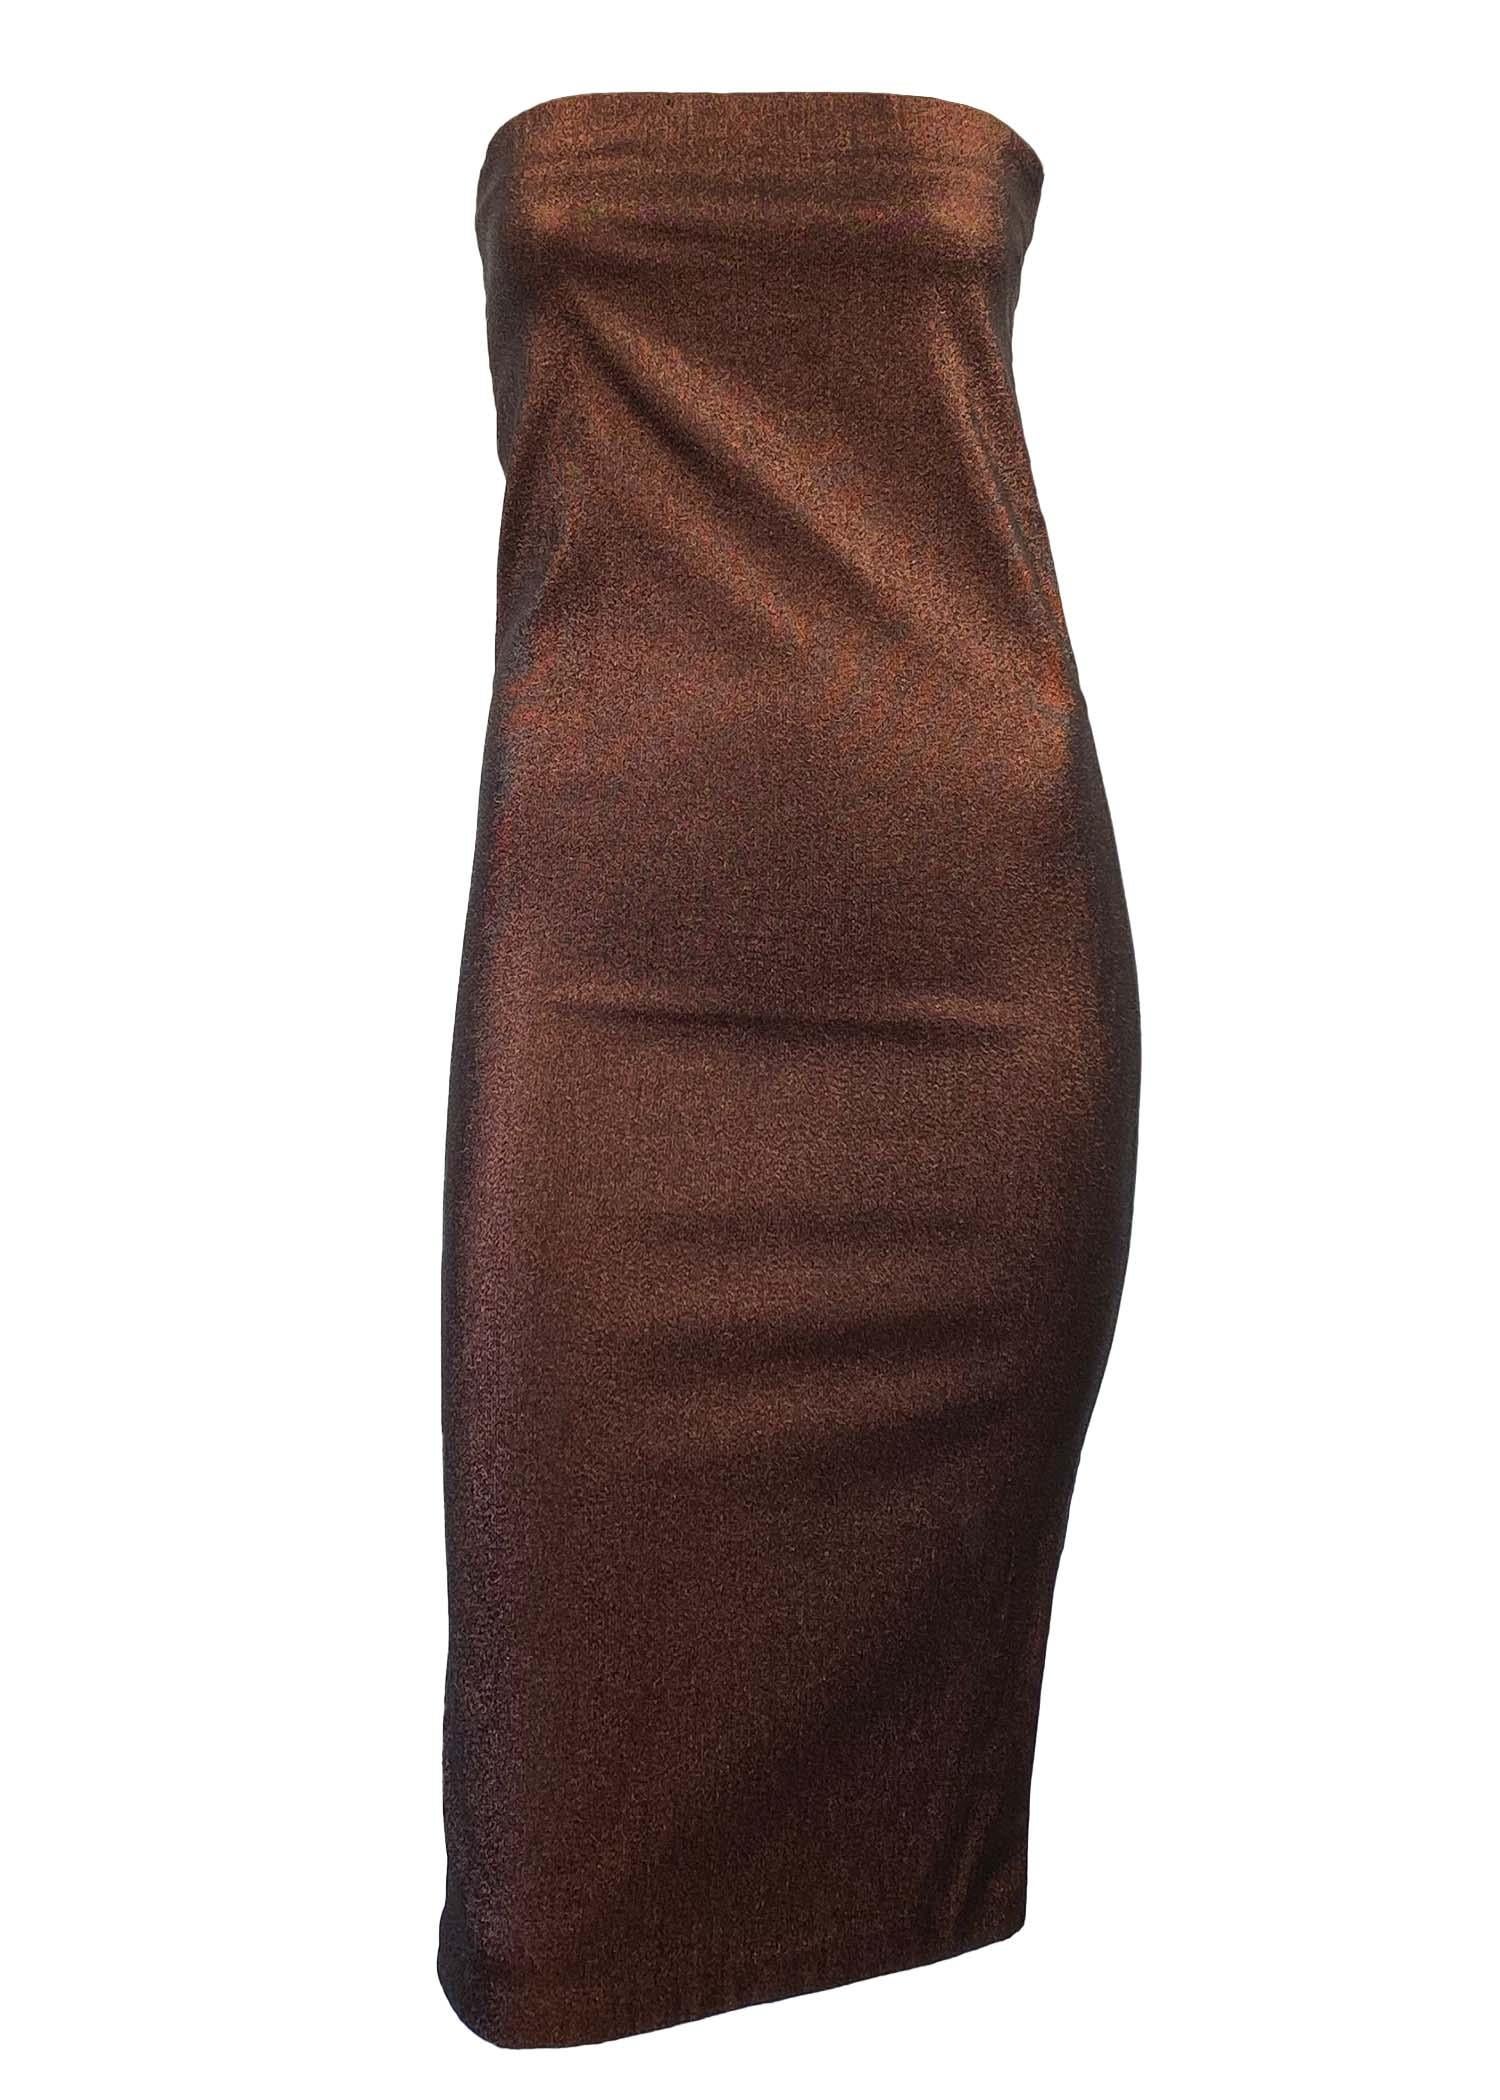 brown metallic dress